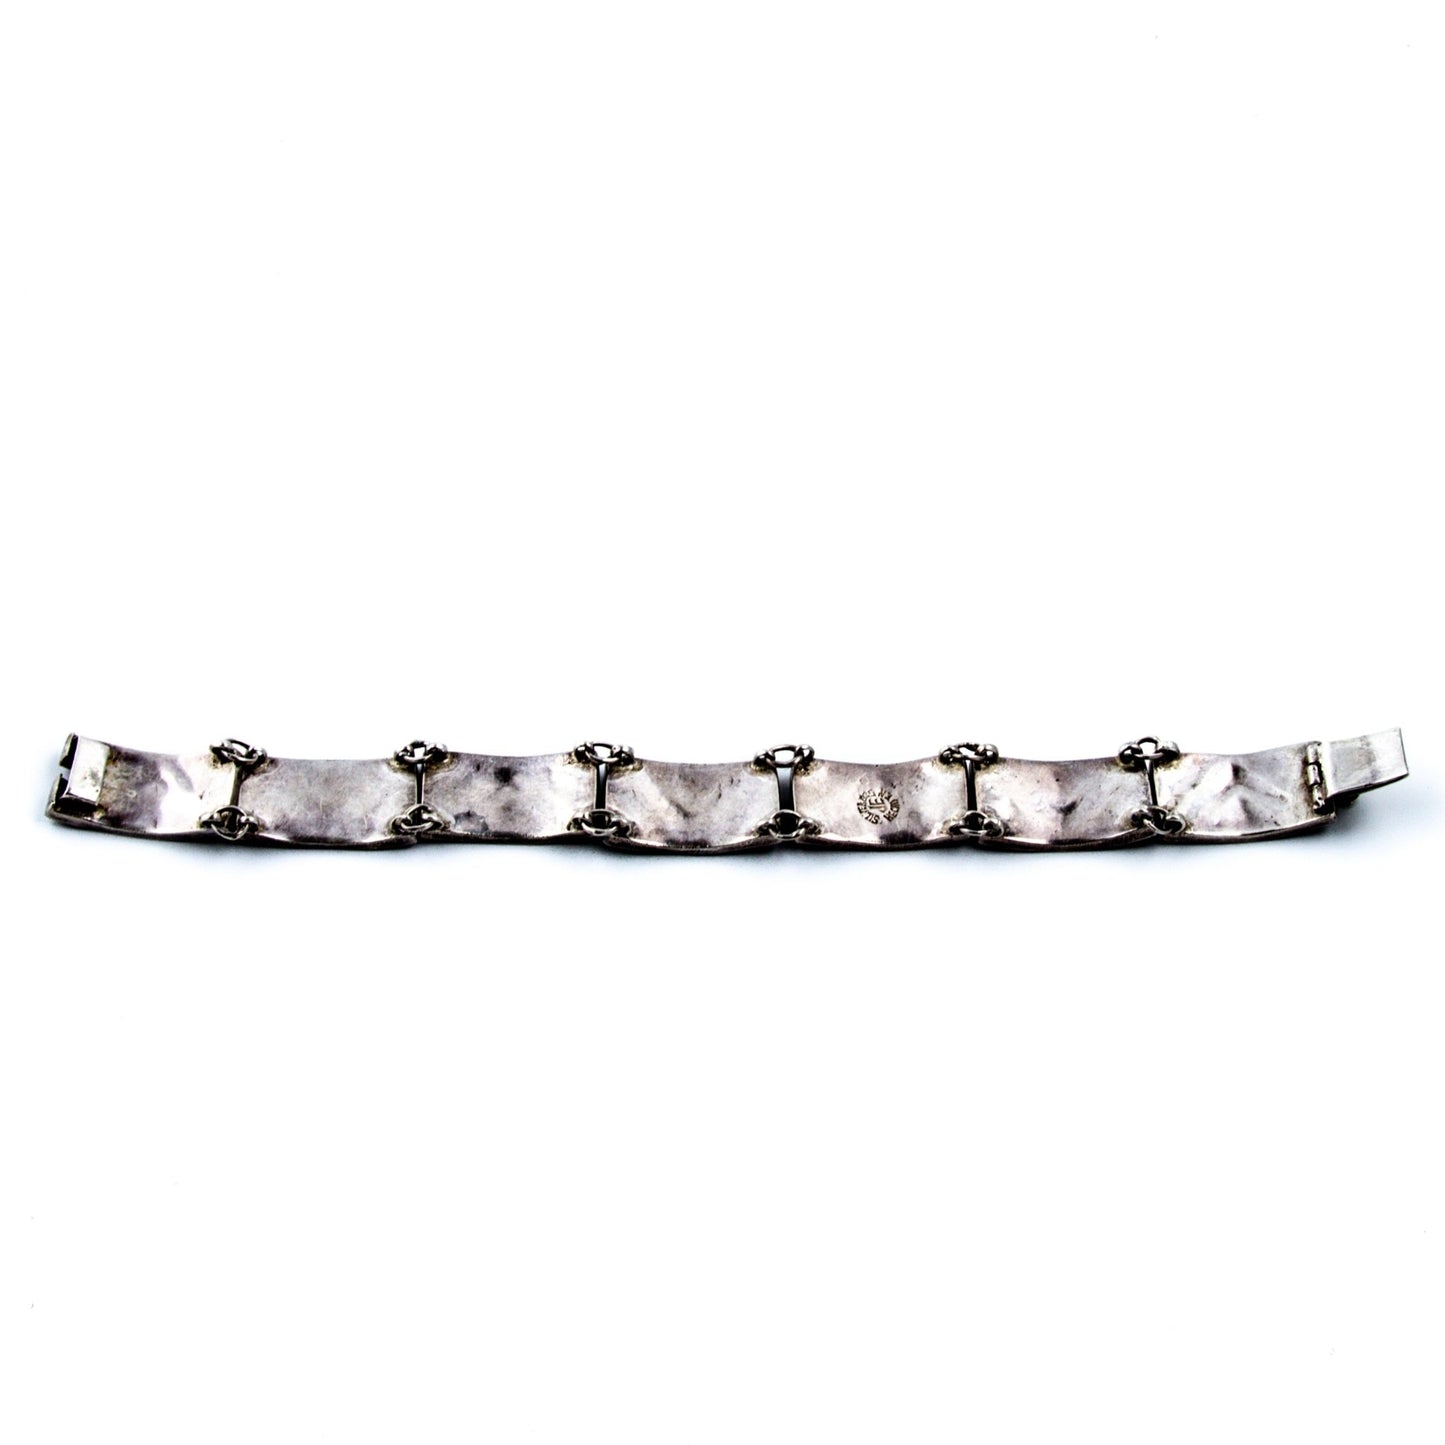 Inlay Mexican Abalone Bracelet - Kingdom Jewelry